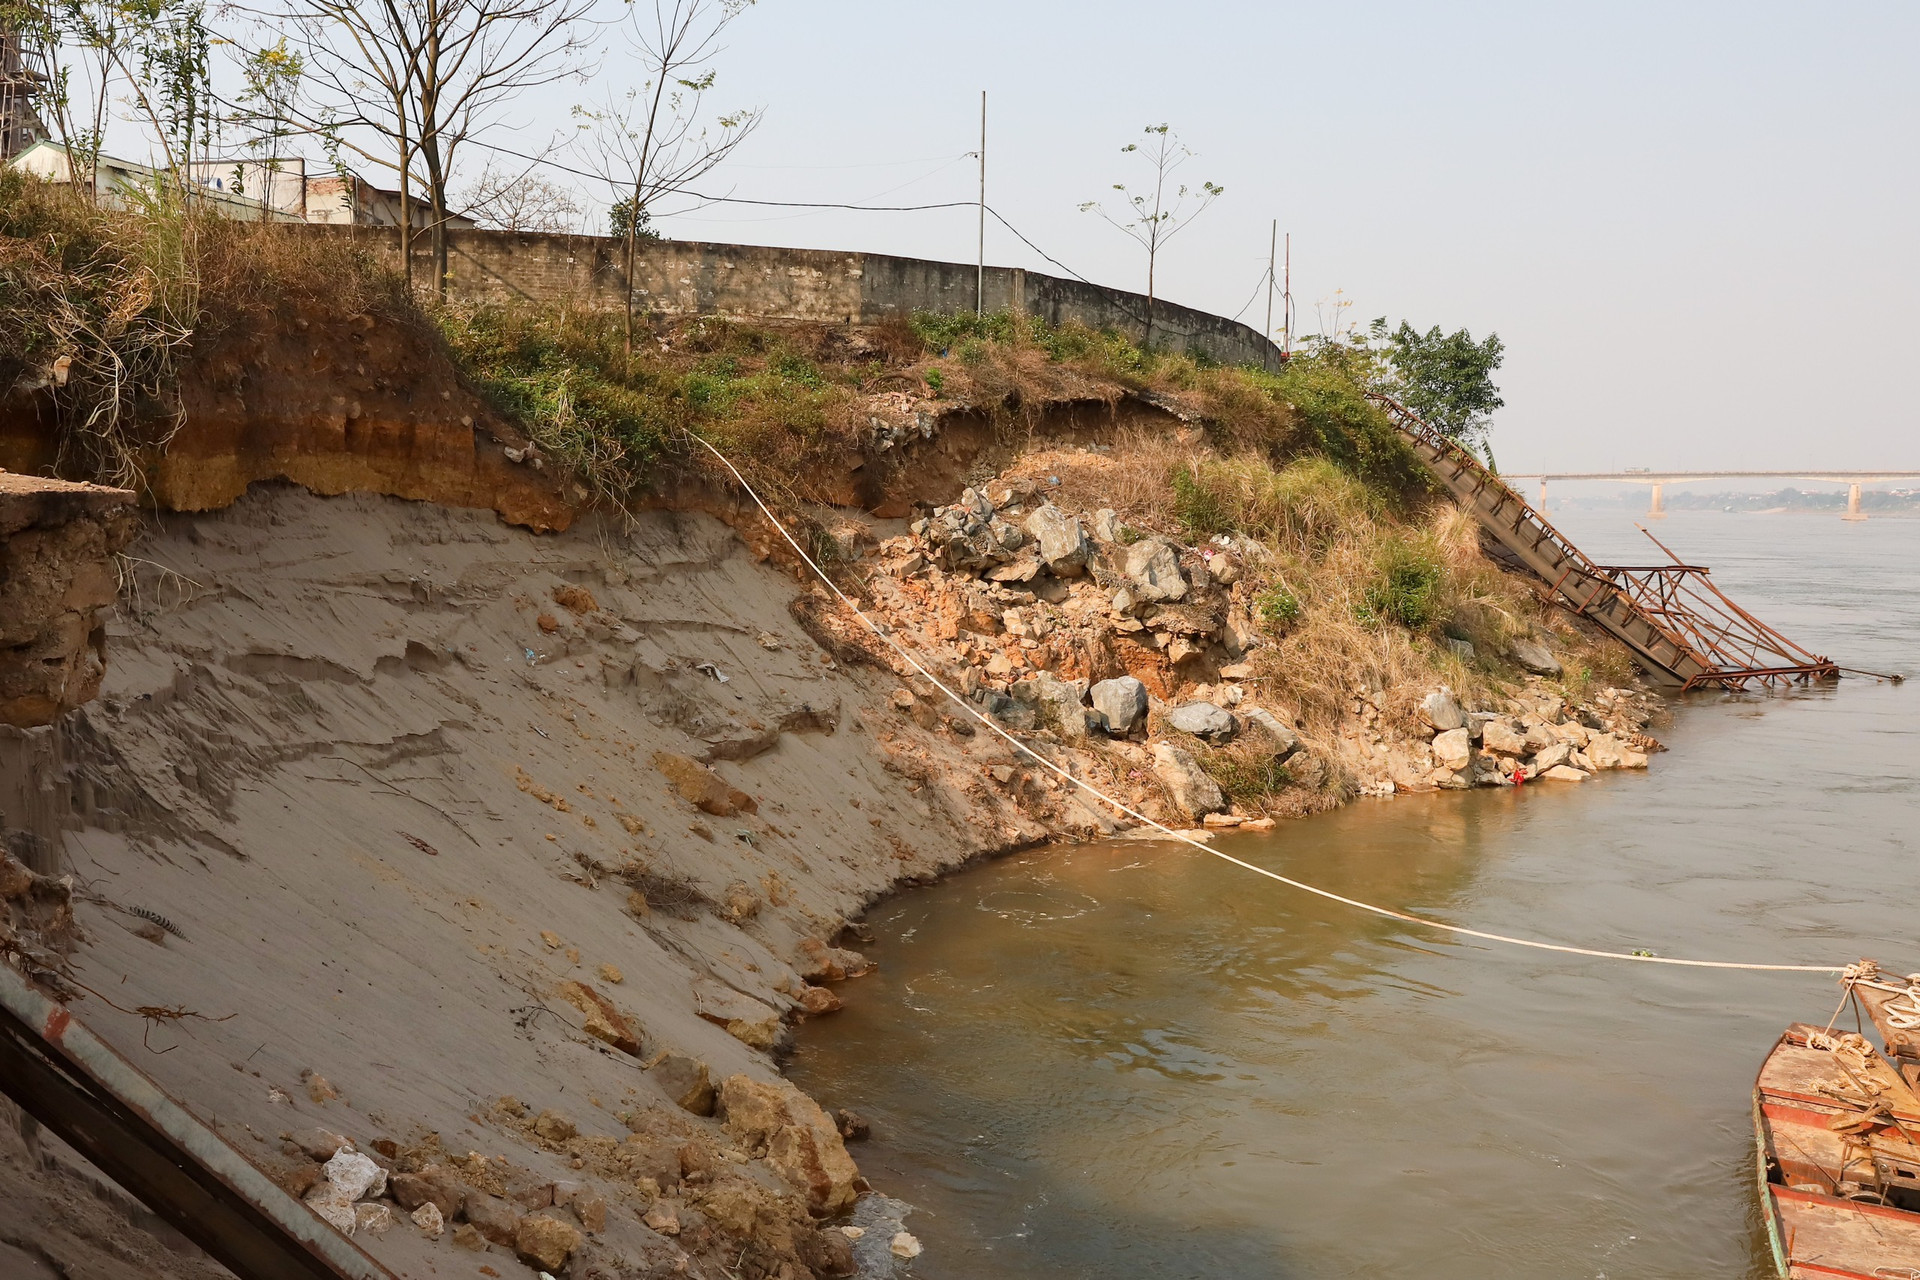 Trước đó, UBND tỉnh Phú Thọ có quyết định số 258 /QĐ-UBND ngày 8/2/2023 công bố tình huống khẩn cấp về thiên tai (bao gồm Phương án xử lý và Lệnh xây dựng công trình khẩn cấp) sự cố sạt lở bờ, vở sông đoạn tương ứng từ km31+200 - km31+650 đê tả sông Đà, thuộc địa bàn xã Dân Quyền với số tiền dự kiến khoảng  20 tỷ đồng. Ảnh BPT